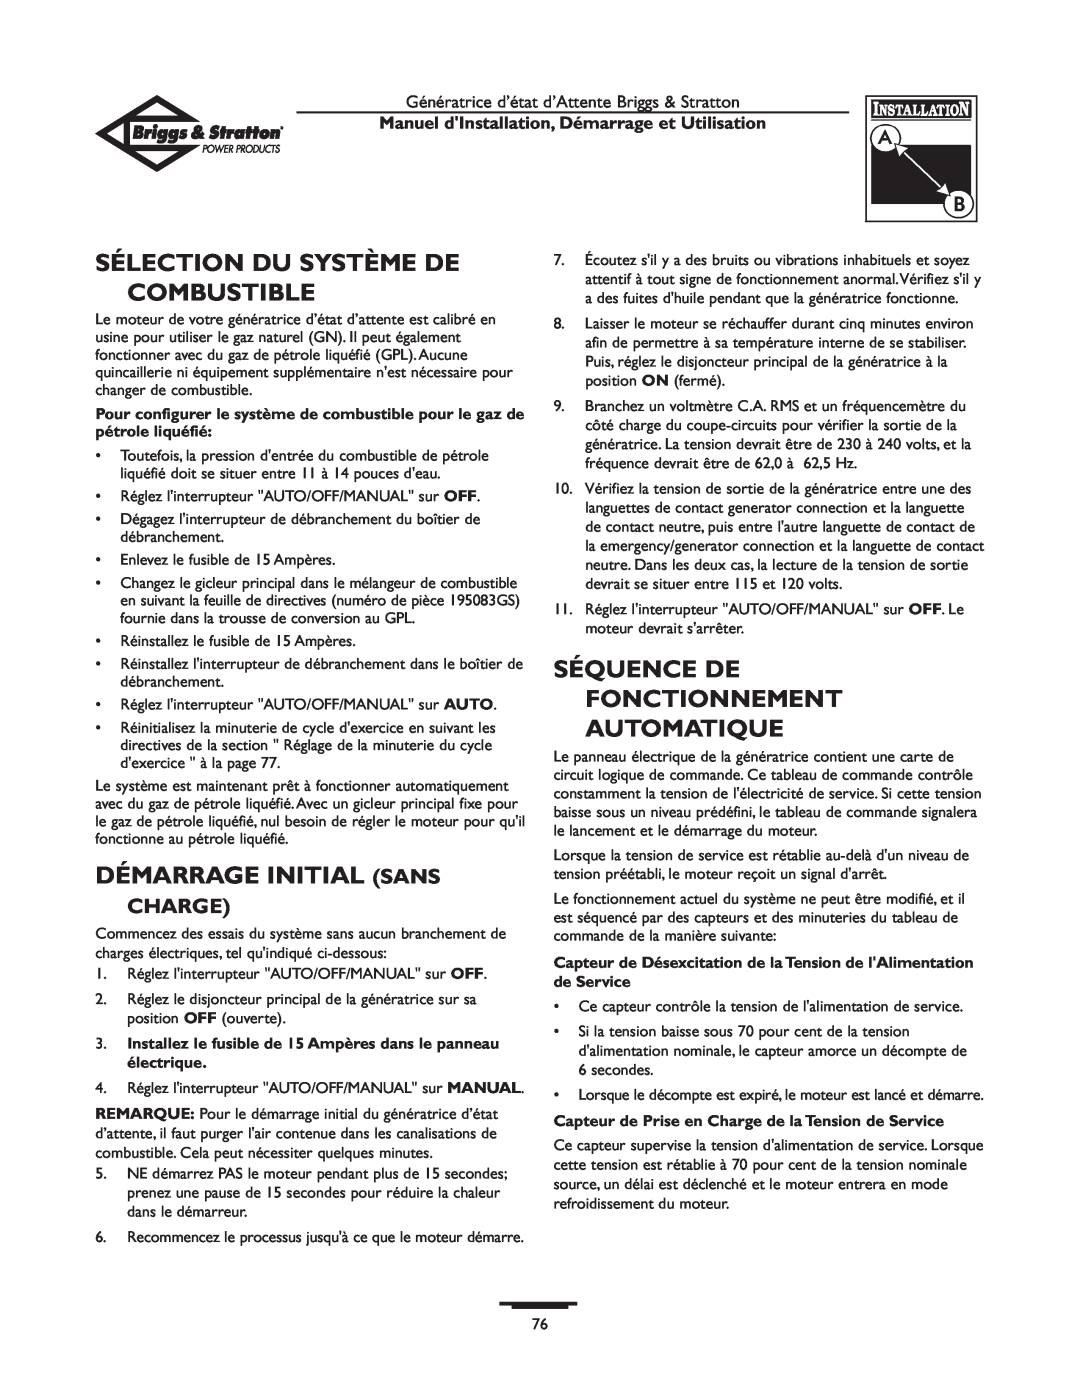 Briggs & Stratton 01897-0 manual Sélection Du Système De Combustible, Démarrage Initial Sans, Charge 